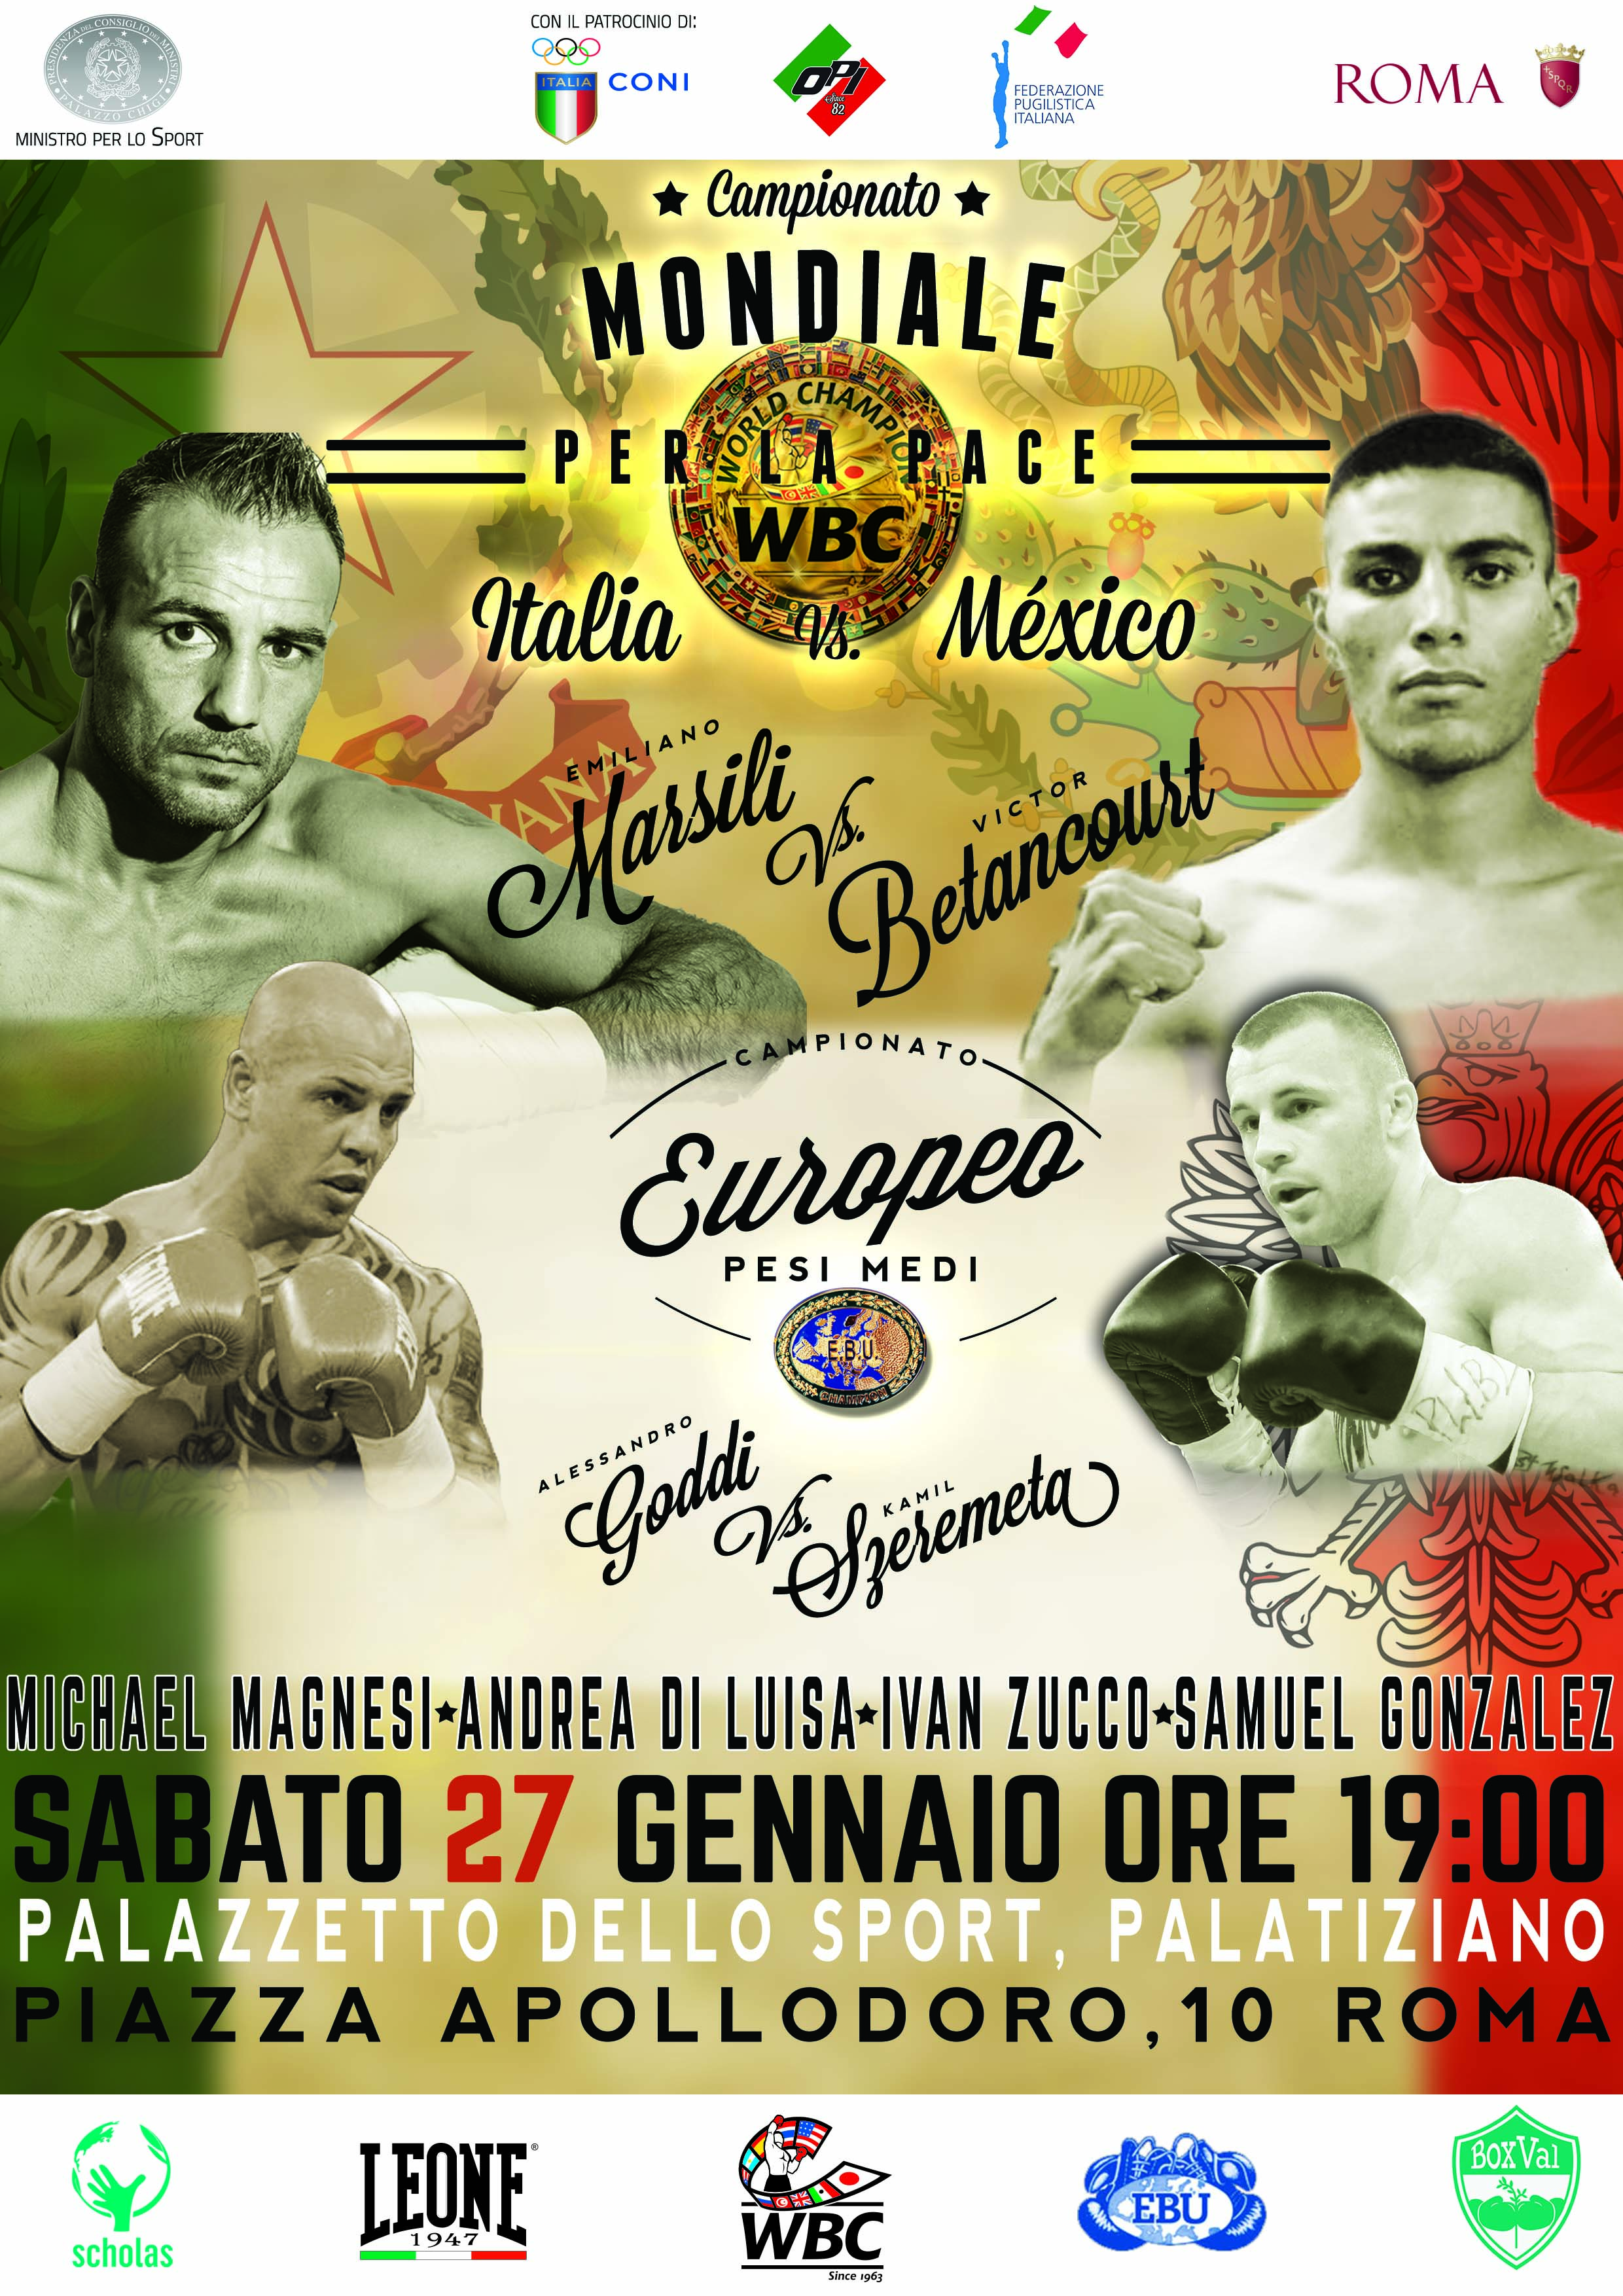 Torna la Grande Boxe in Italia Sabato 27 gennaio a Roma il “Campionato per la Pace WBC”  Emiliano Marsili (Italia) vs Victor Betancourt (México)